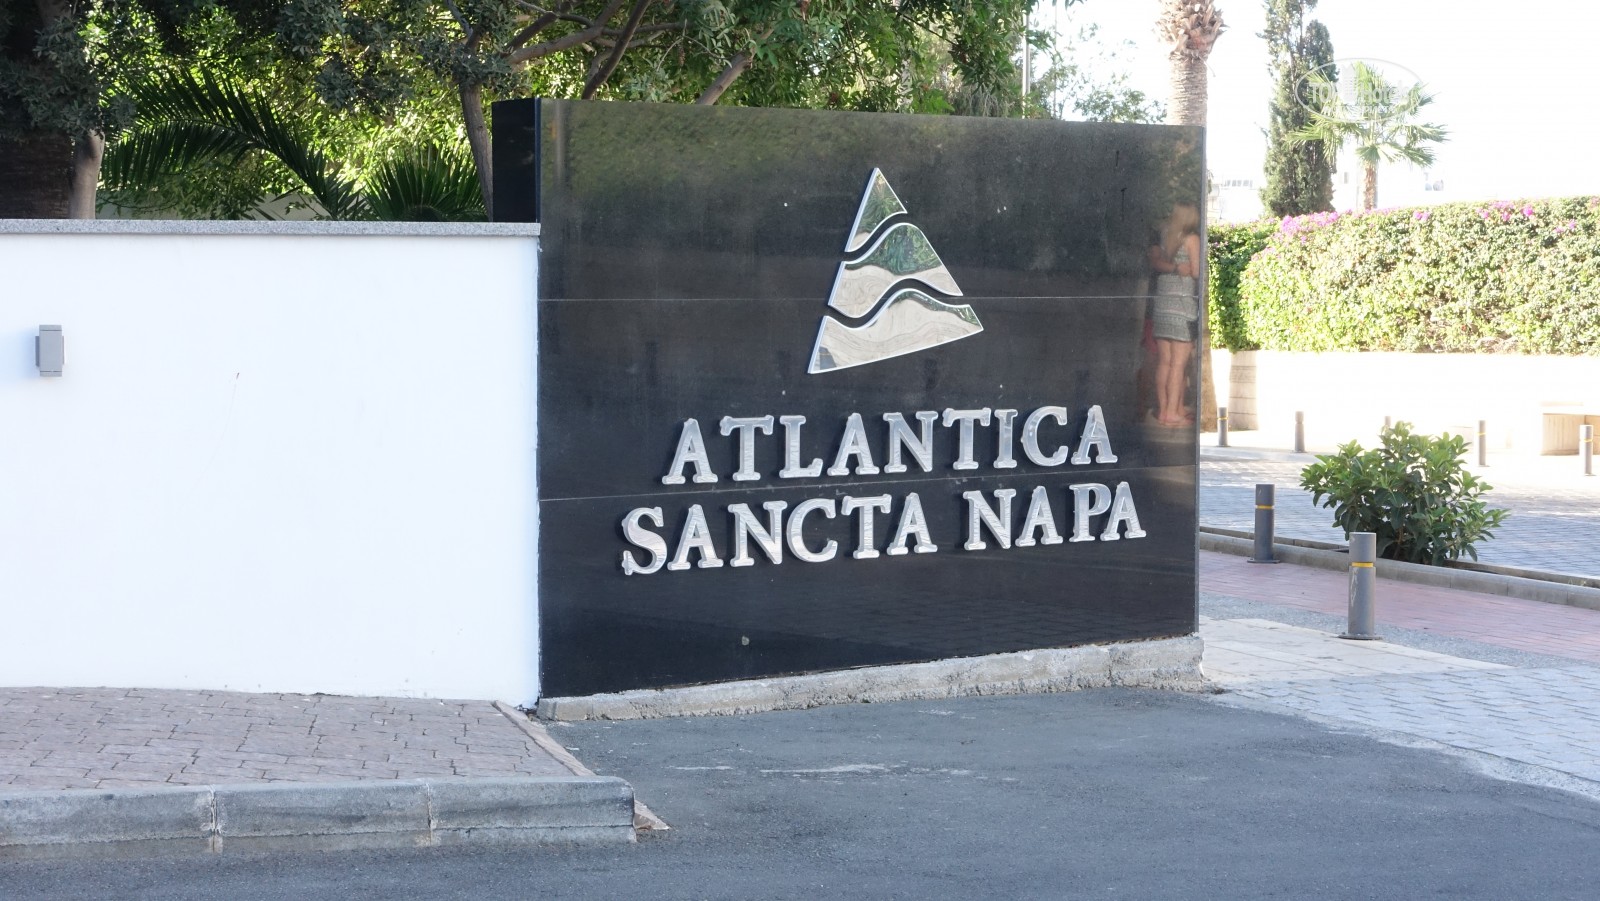 Atlantica Sancta Napa Cypr ceny